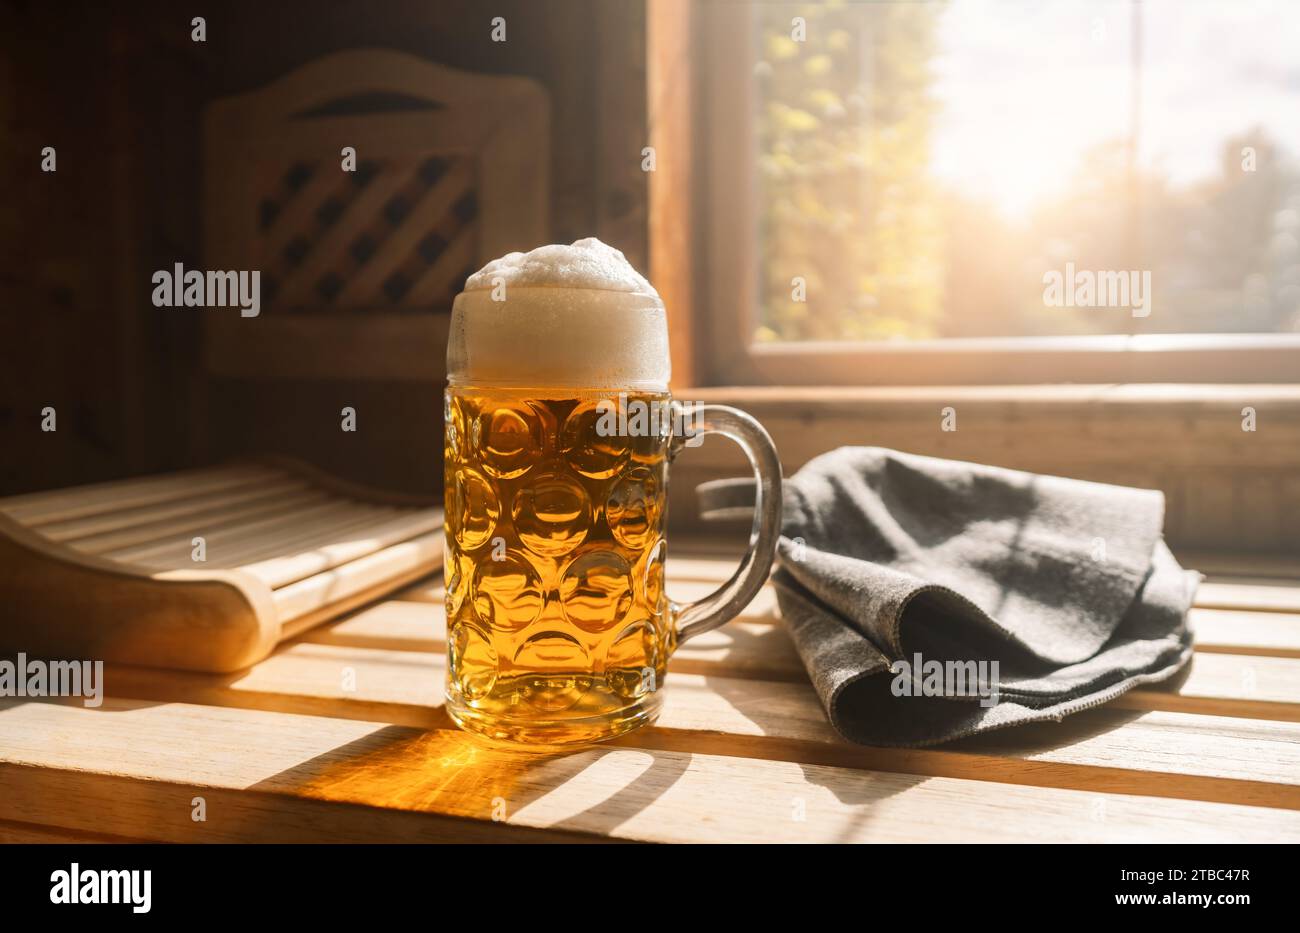 Bierkrug mit geschäumtem Bier ruhen auf einem Felsvorsprung in einer Sauna und fangen Sonnenlicht ein. In der Nähe befinden sich finnische Saunahüte auf einer Holzbank. Bild des Spa- und Wellnesskonzepts Stockfoto